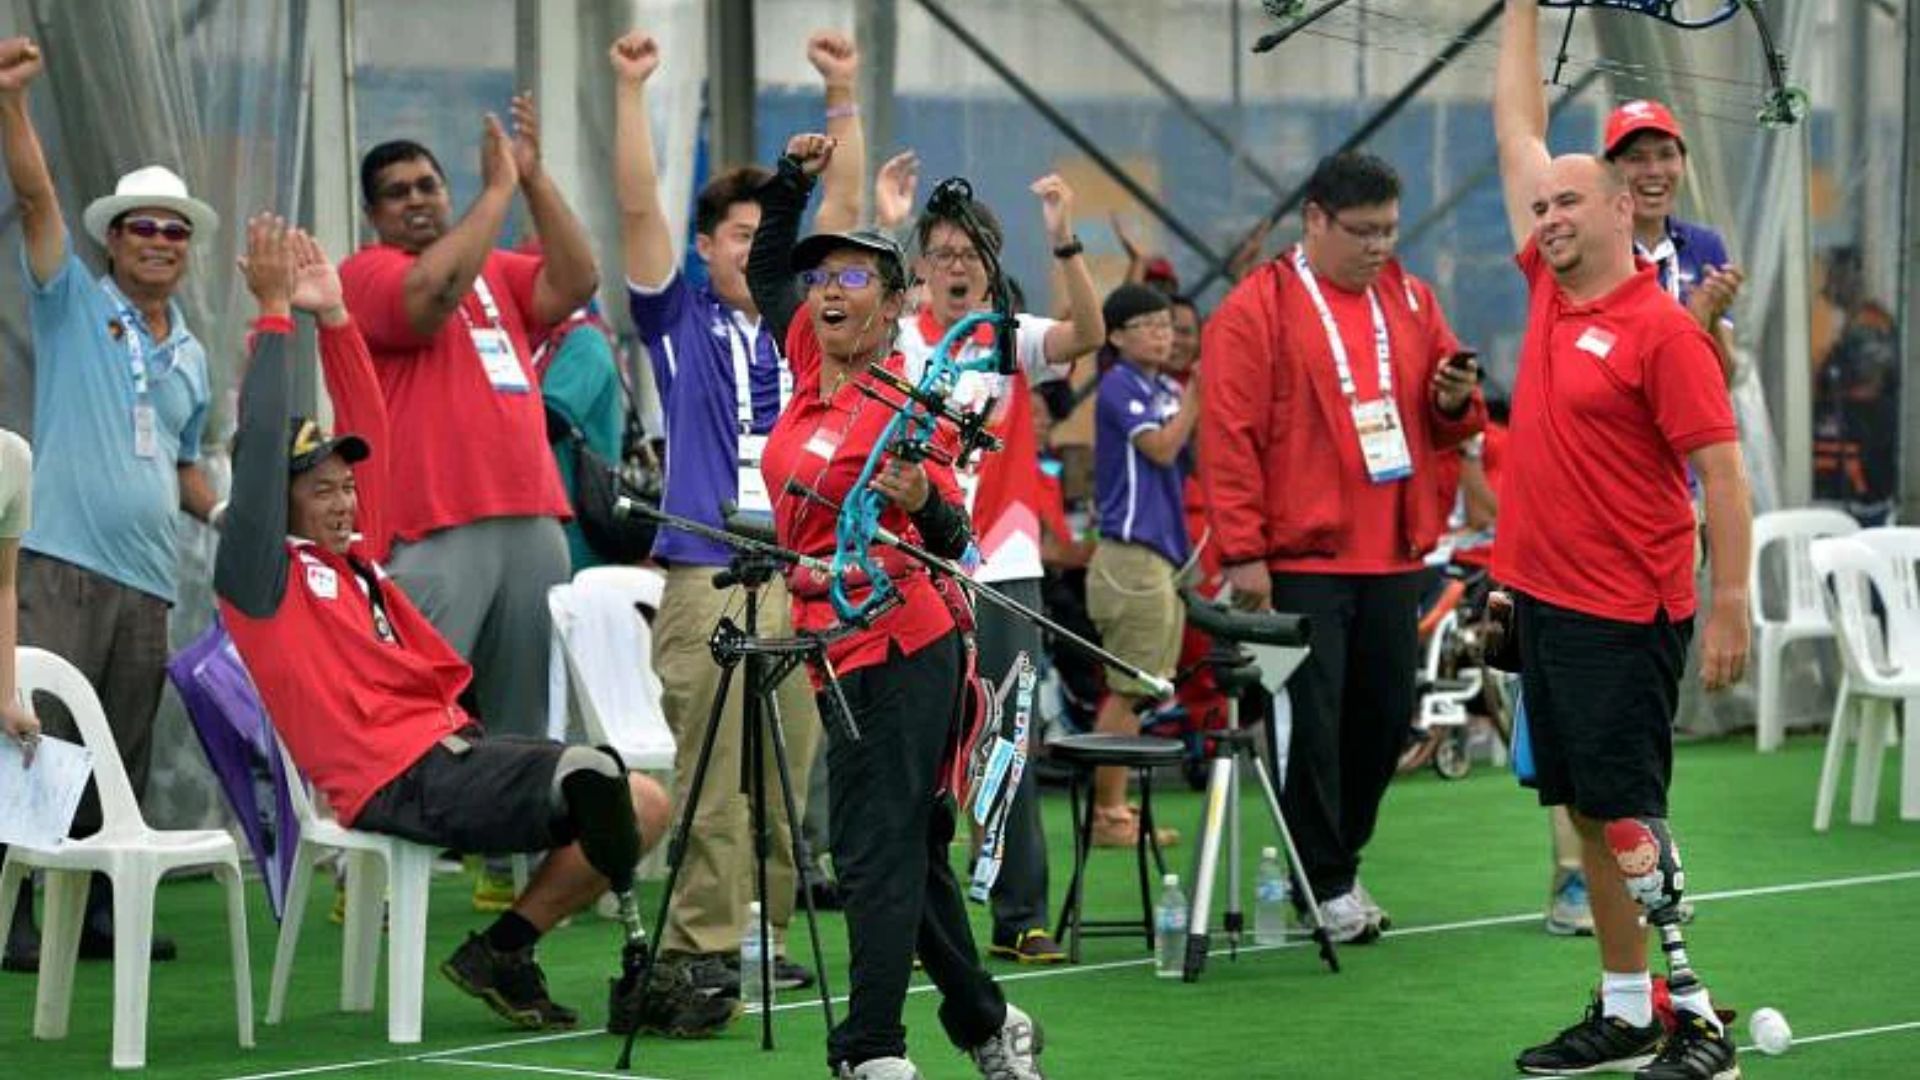 Passion for gold: Para archer Nur Syahidah Alim aims for Paris 2024